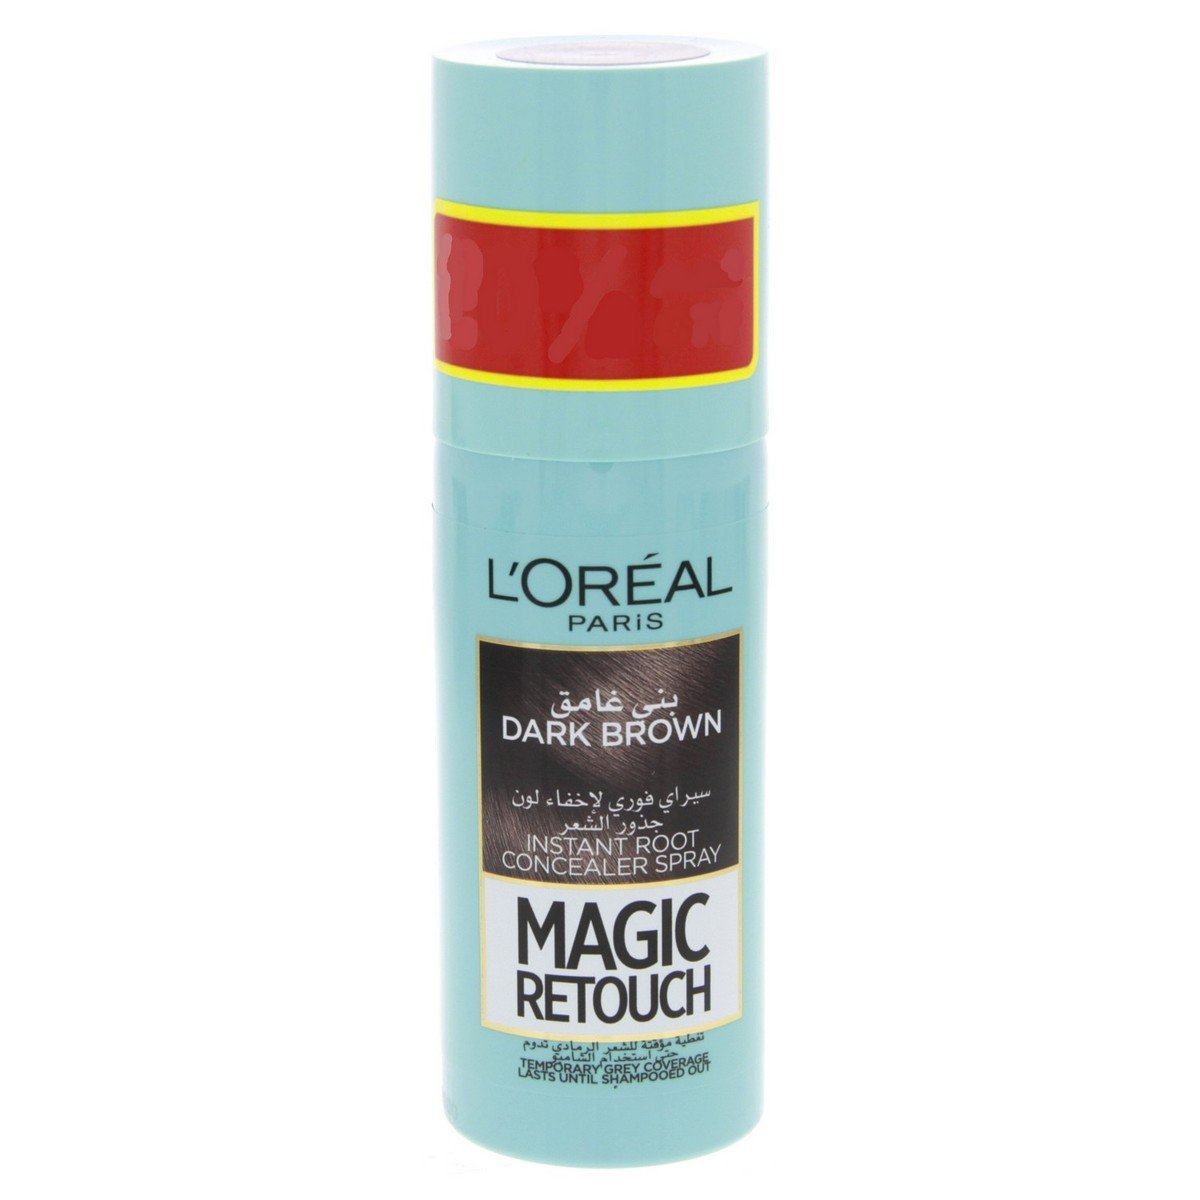 L'Oreal Paris Magic Retouch Dark Brown Hair Colour Spray 75ml